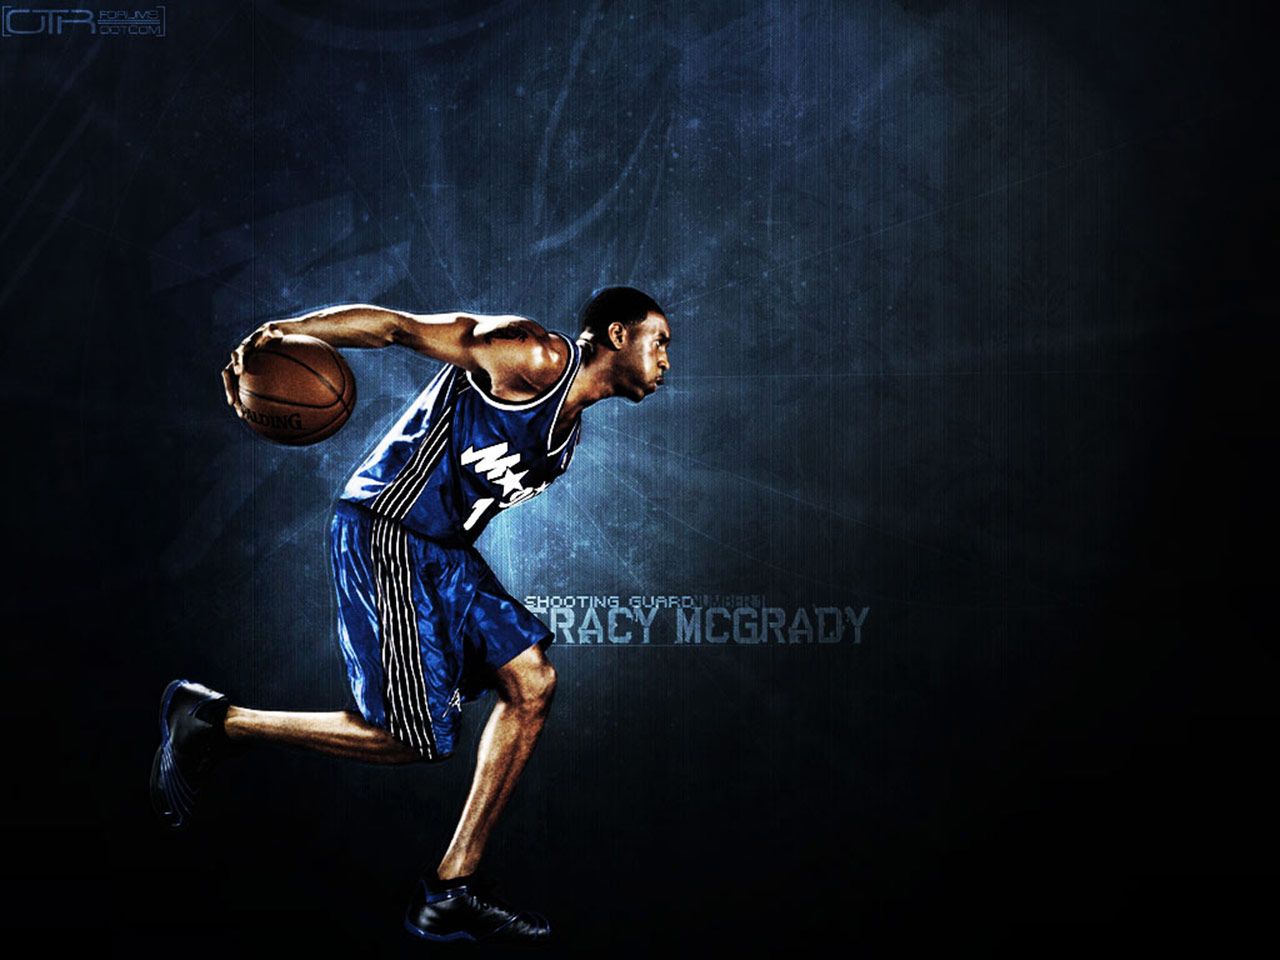 Tracy Mcgrady Orlando Magic Wallpaper | Basketball Wallpapers at ...